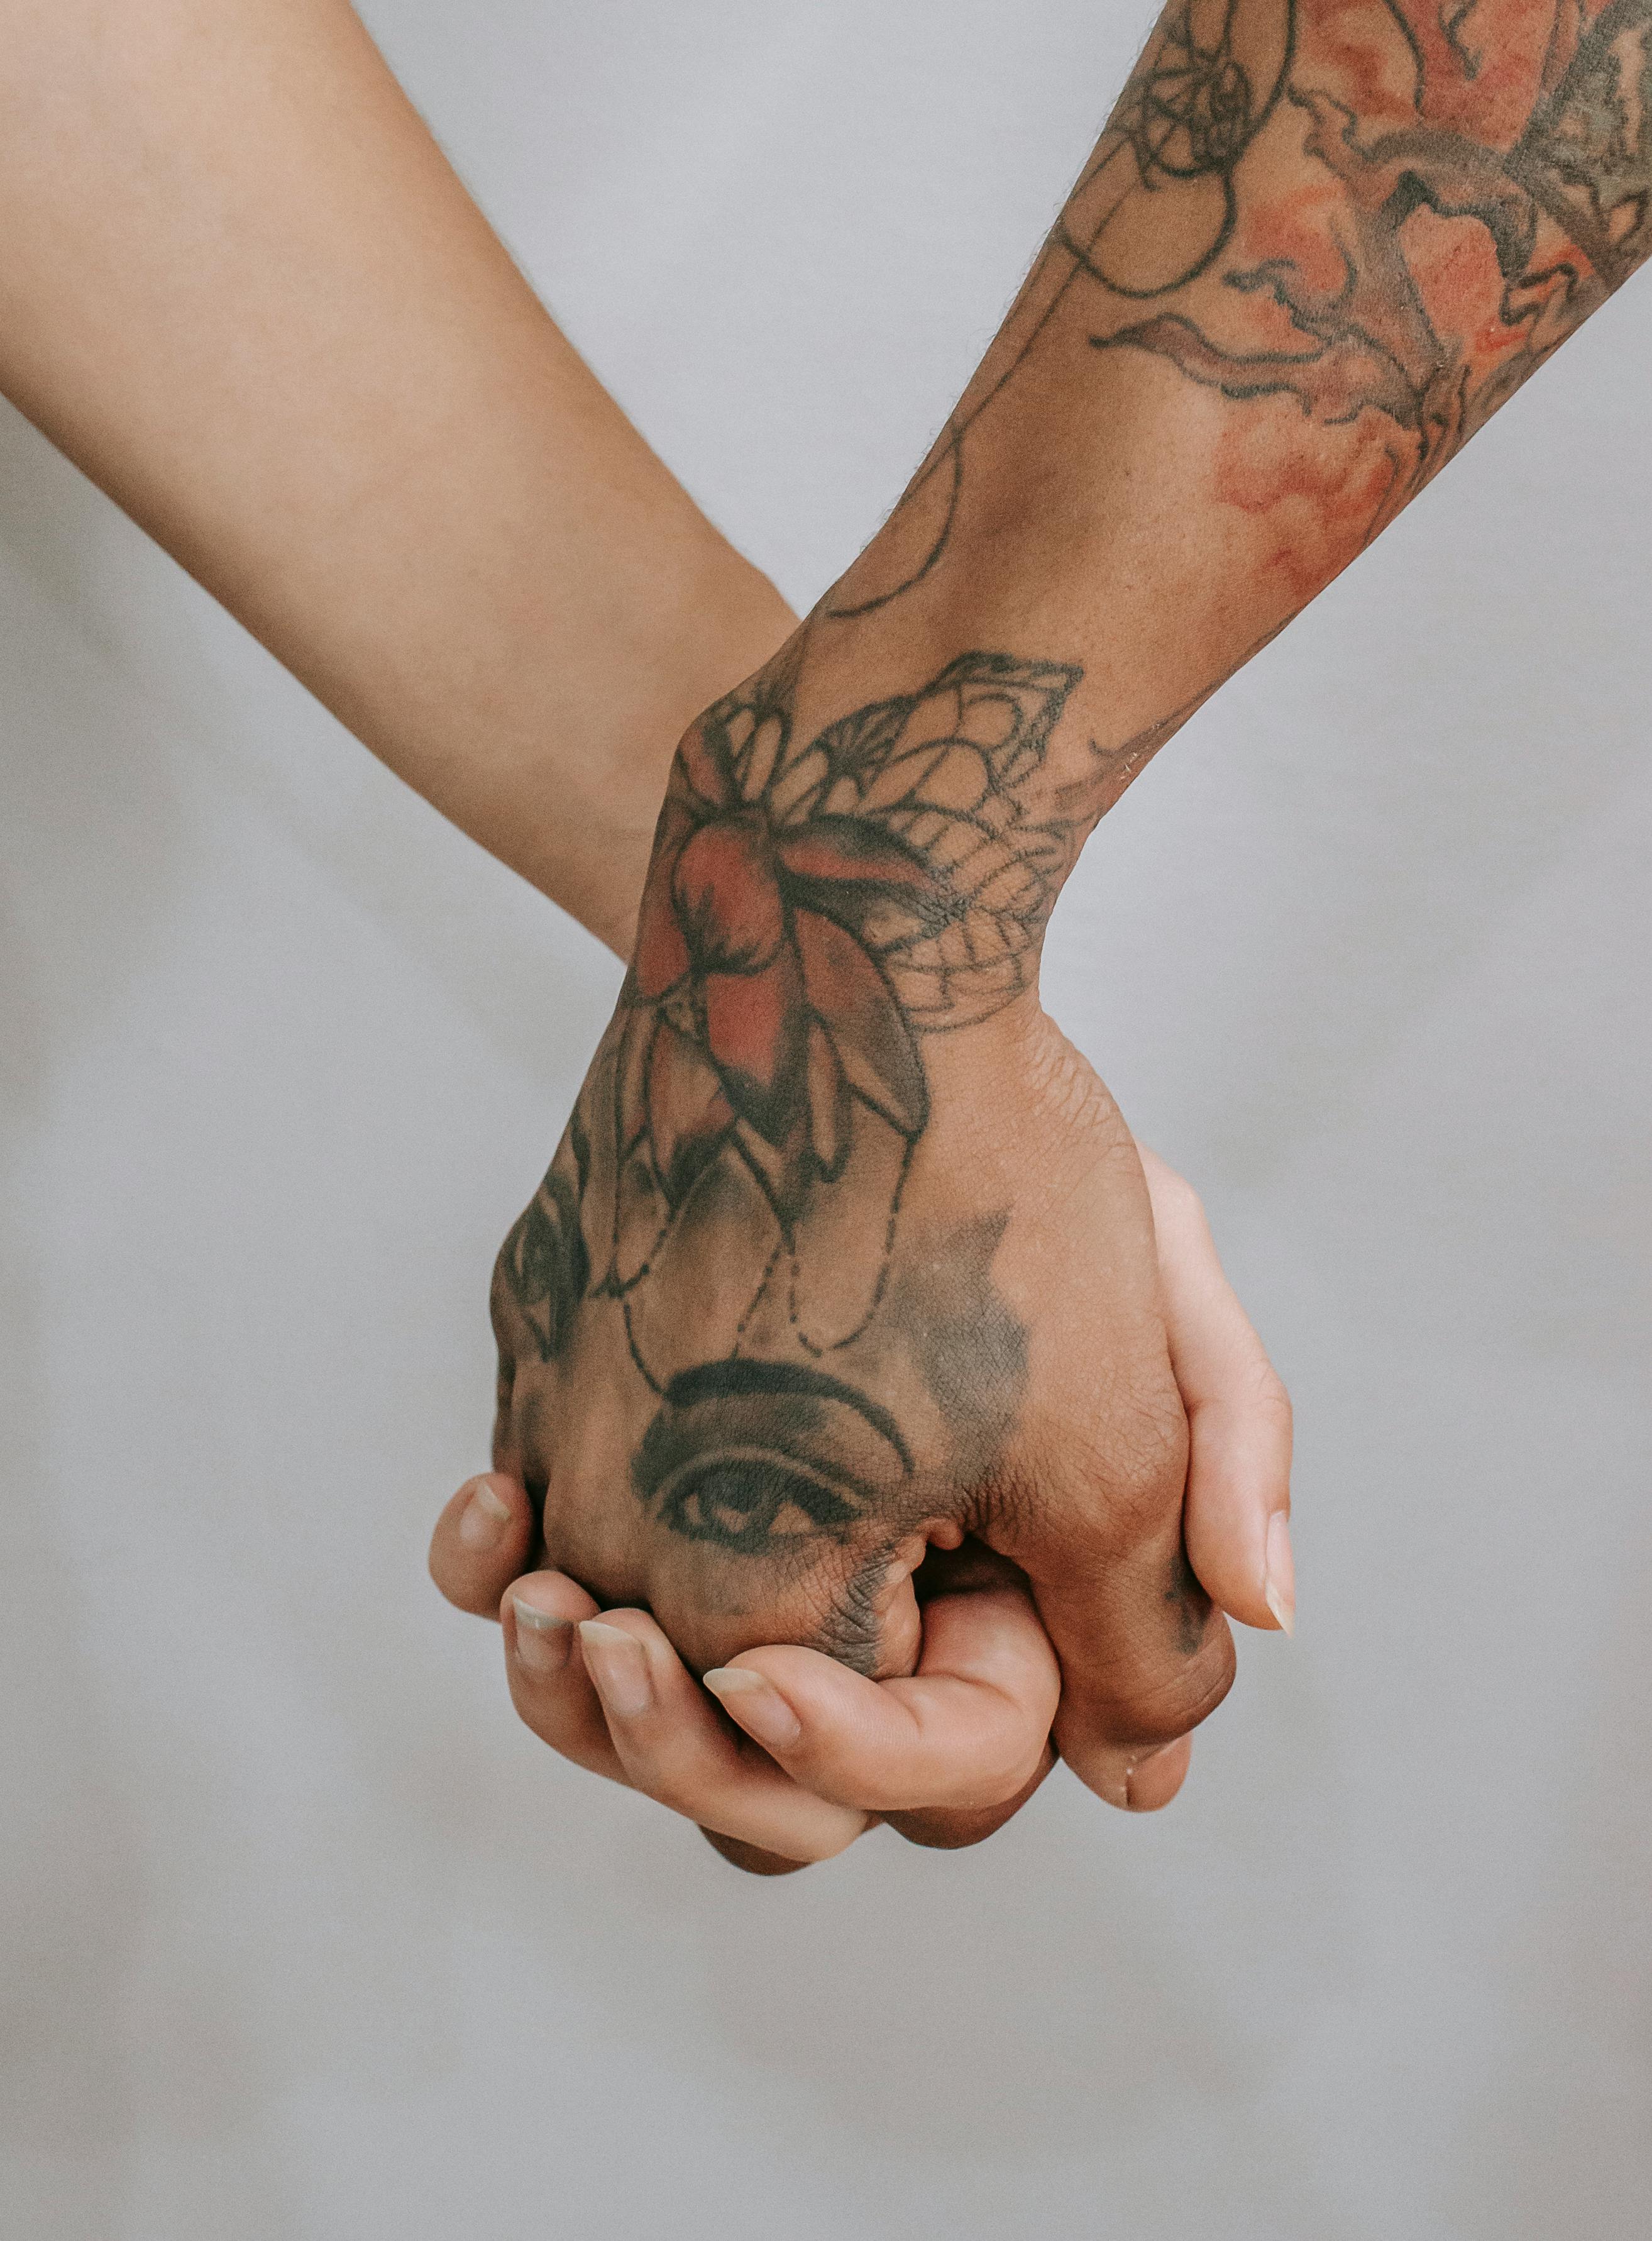 Antonio – East End Tattoo